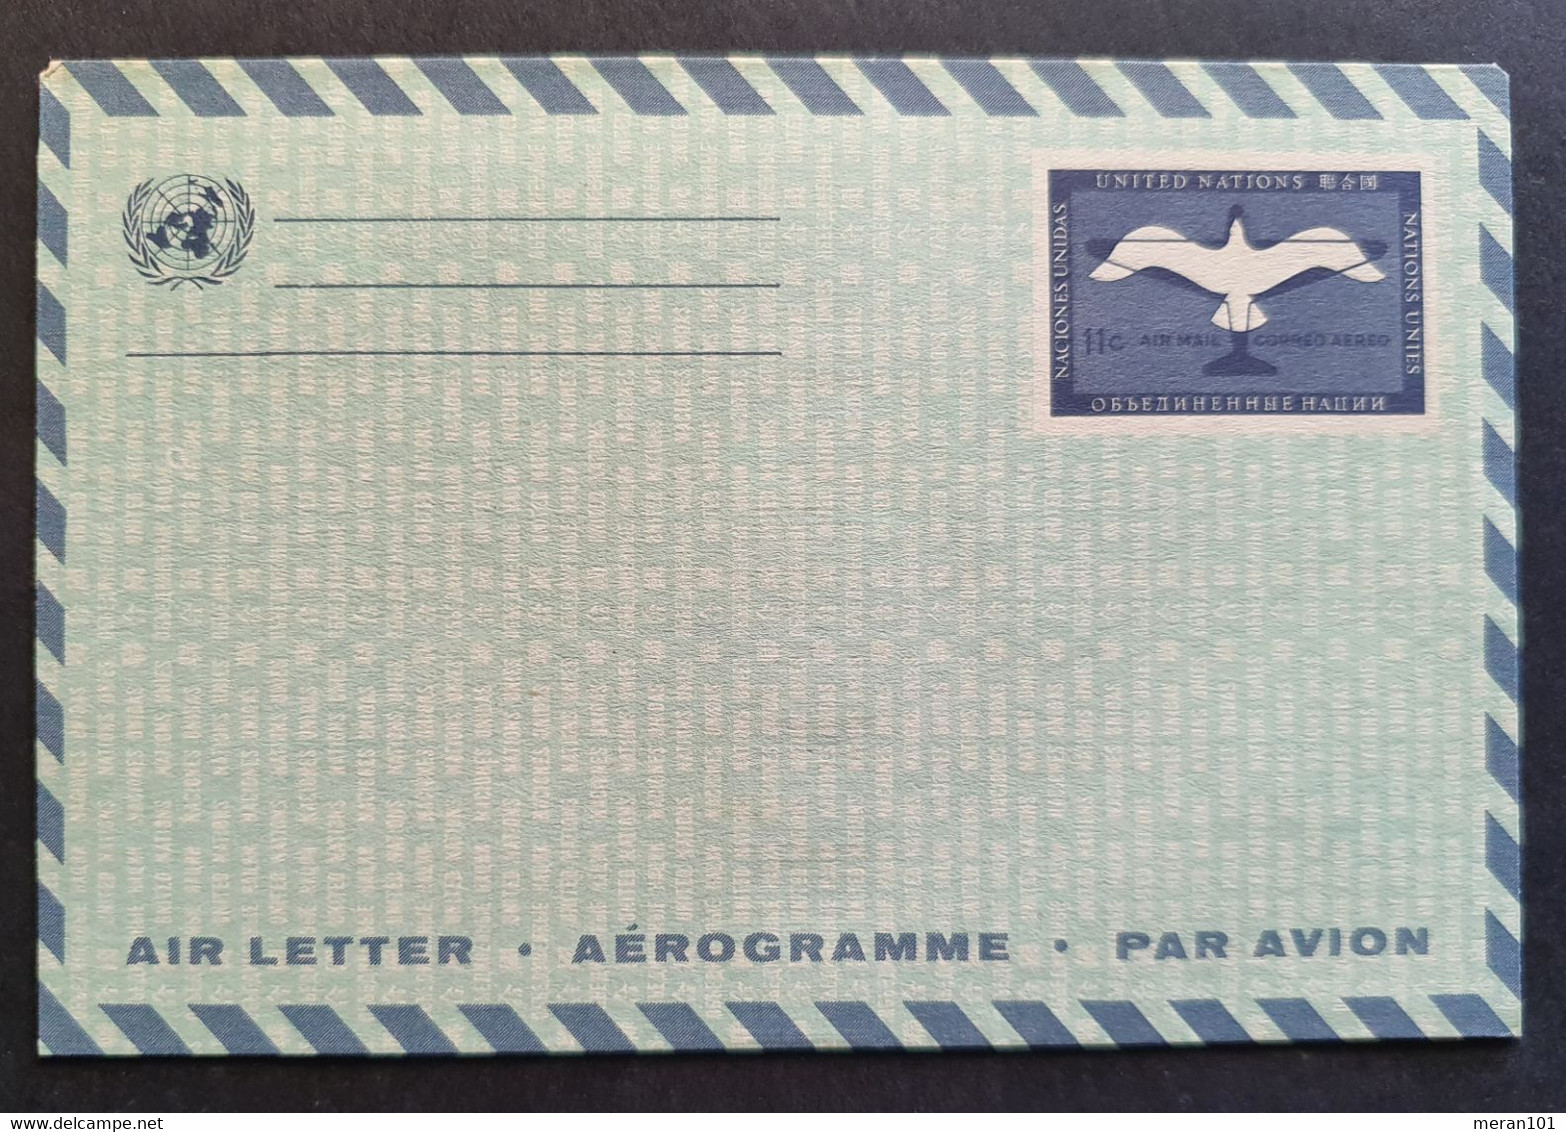 Vereinte Nationen New York, Umschlag Aerogramm Ungebraucht - Luchtpost